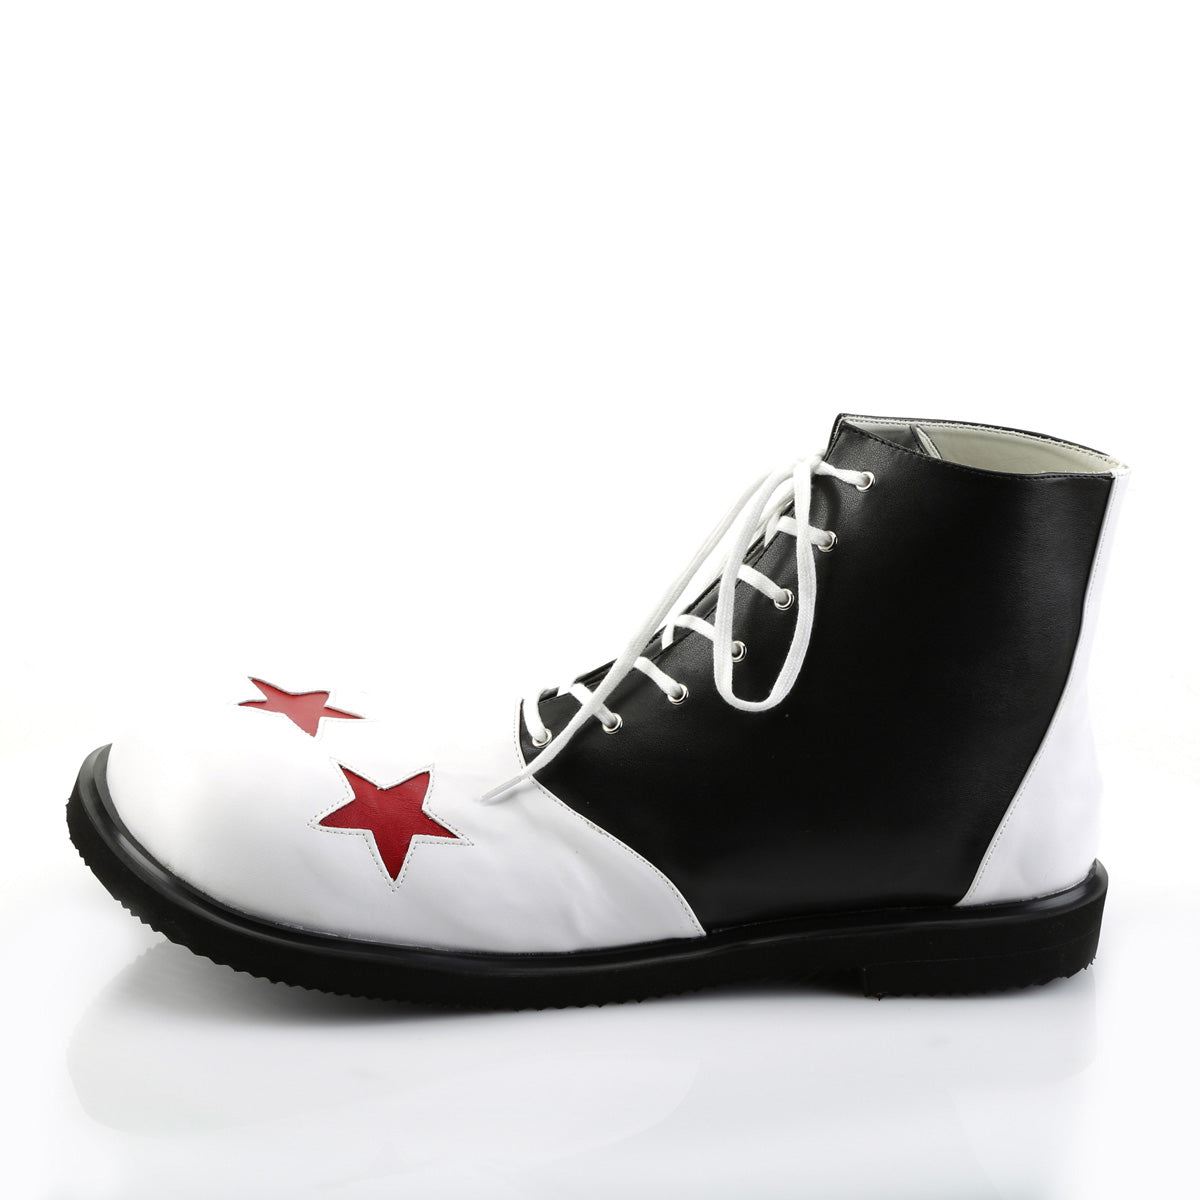 CLOWN-02 Black-White Clown Shoe